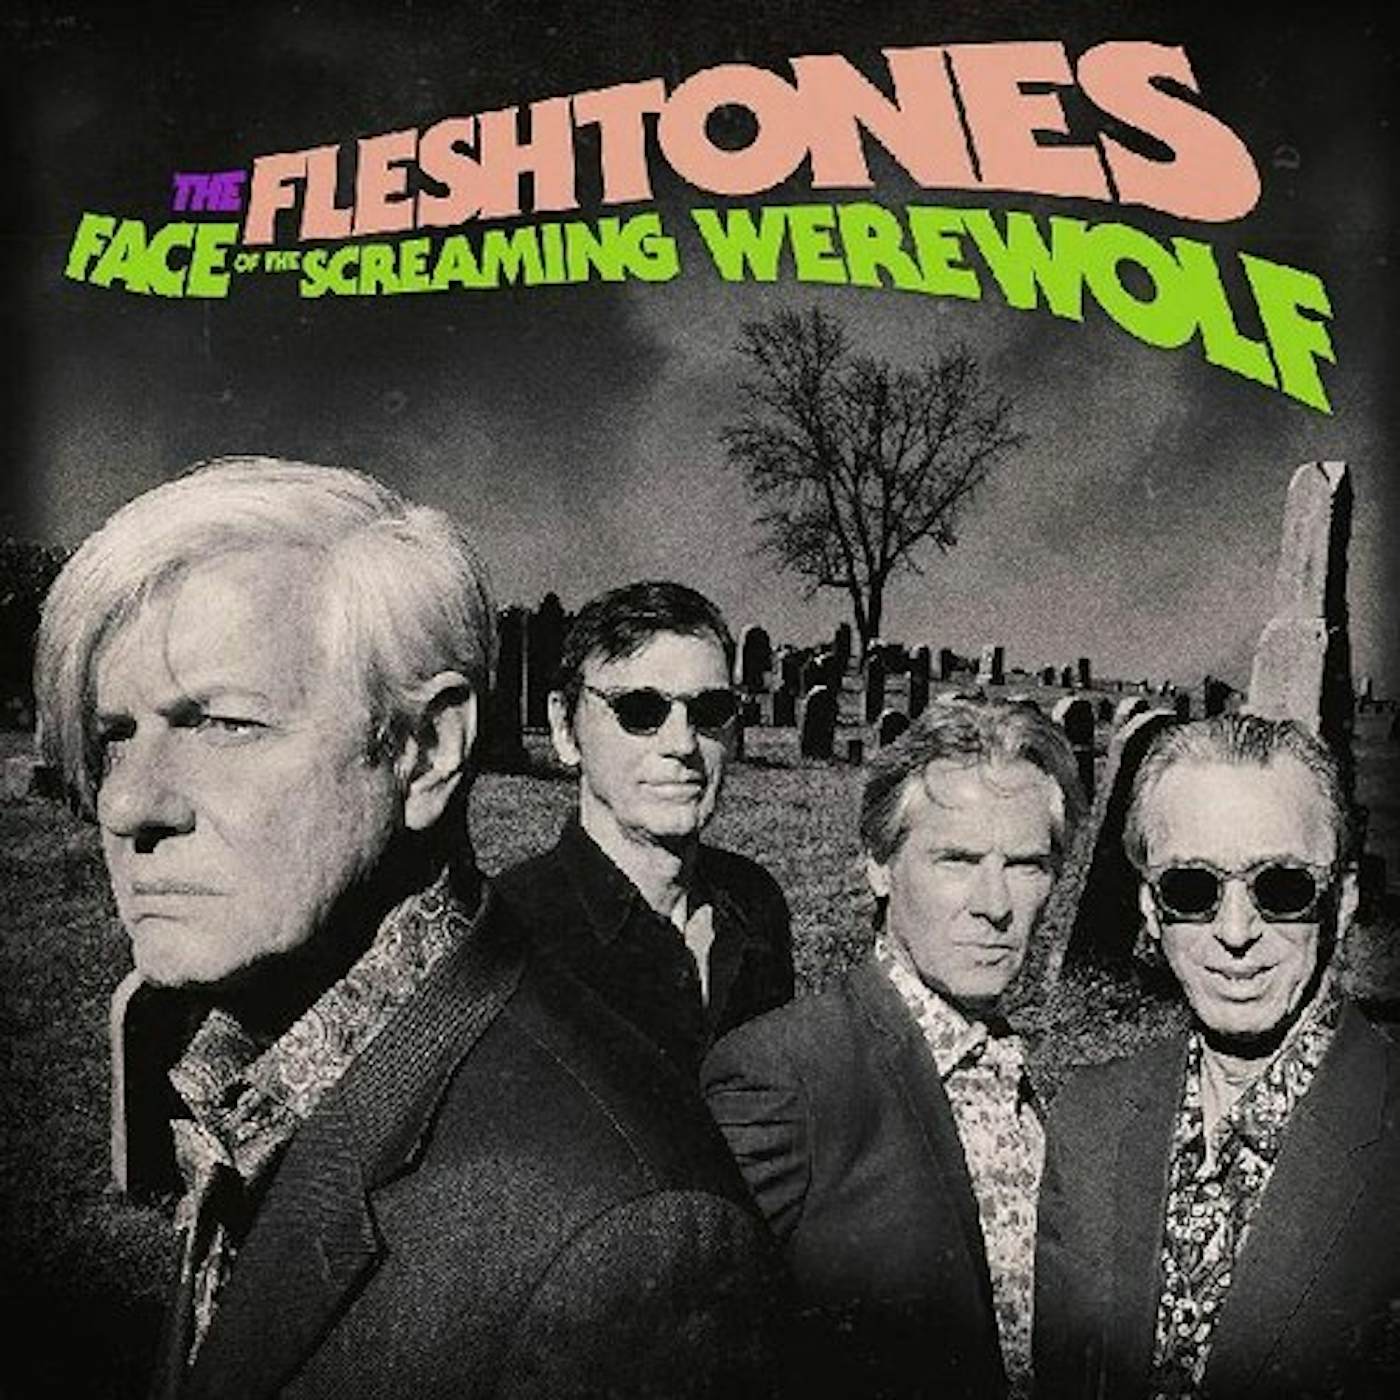 The Fleshtones FACE OF THE SCREAMING WEREWOLF CD